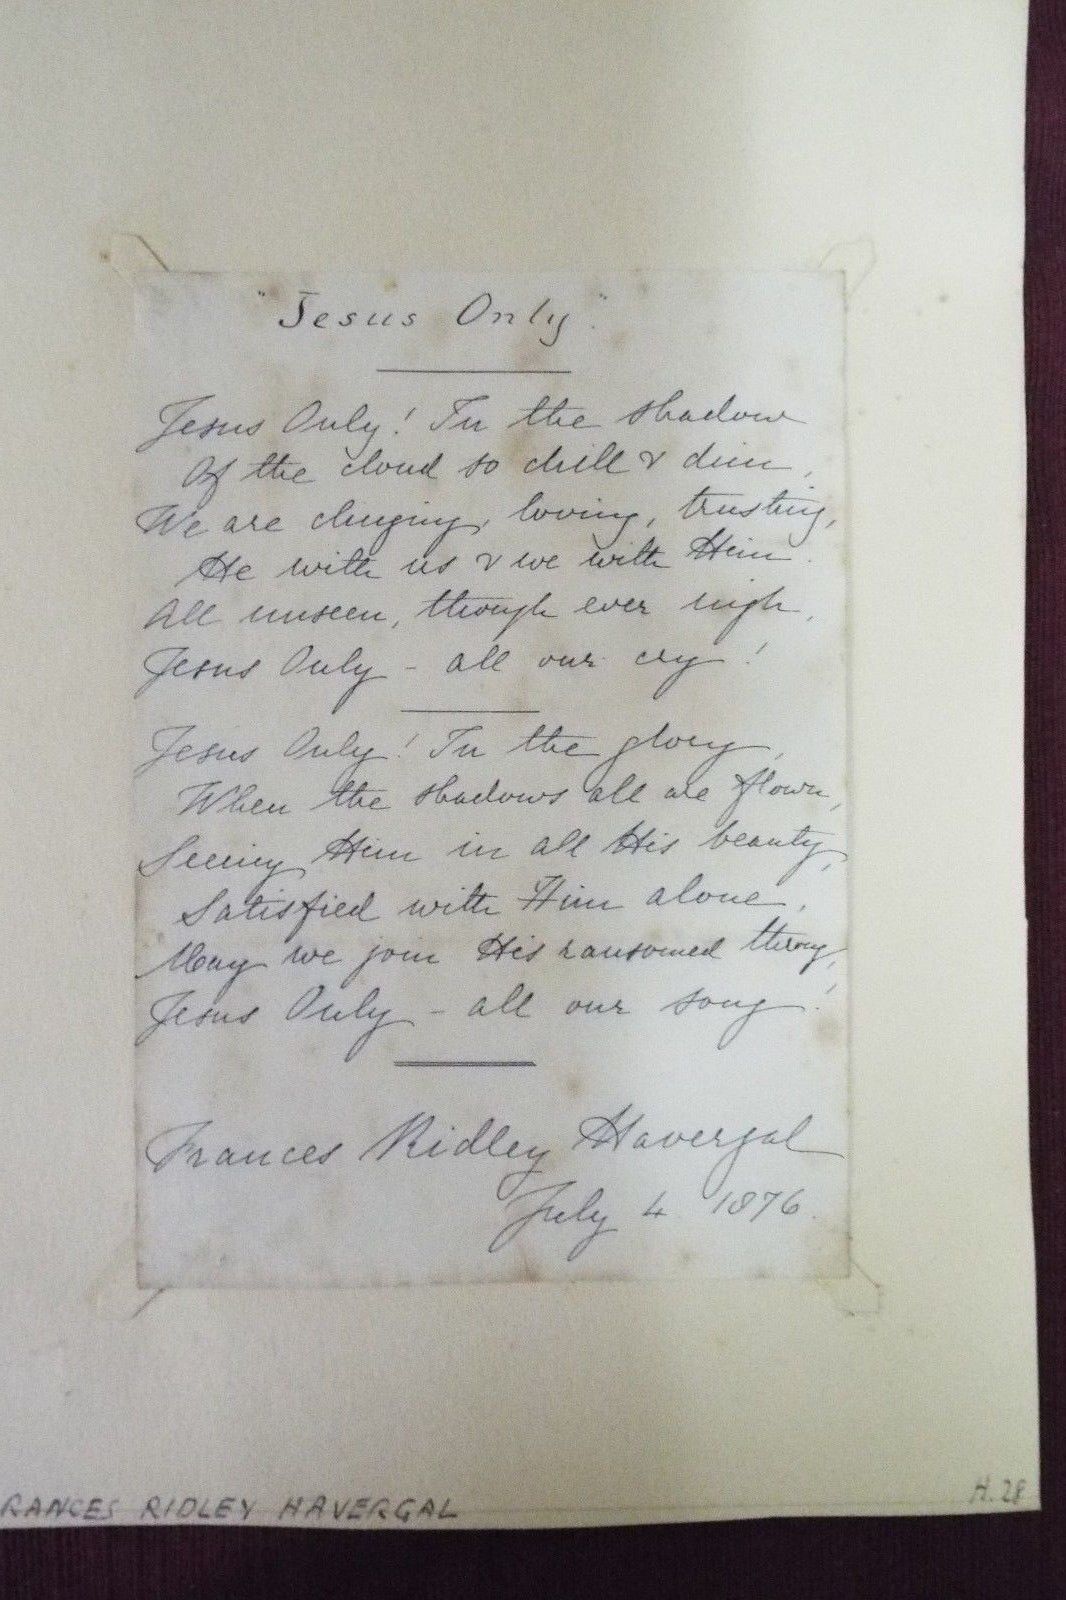 1876---Frances  Ridley Havergal Handwritten Hymn -signed - -British Fanny Crosby